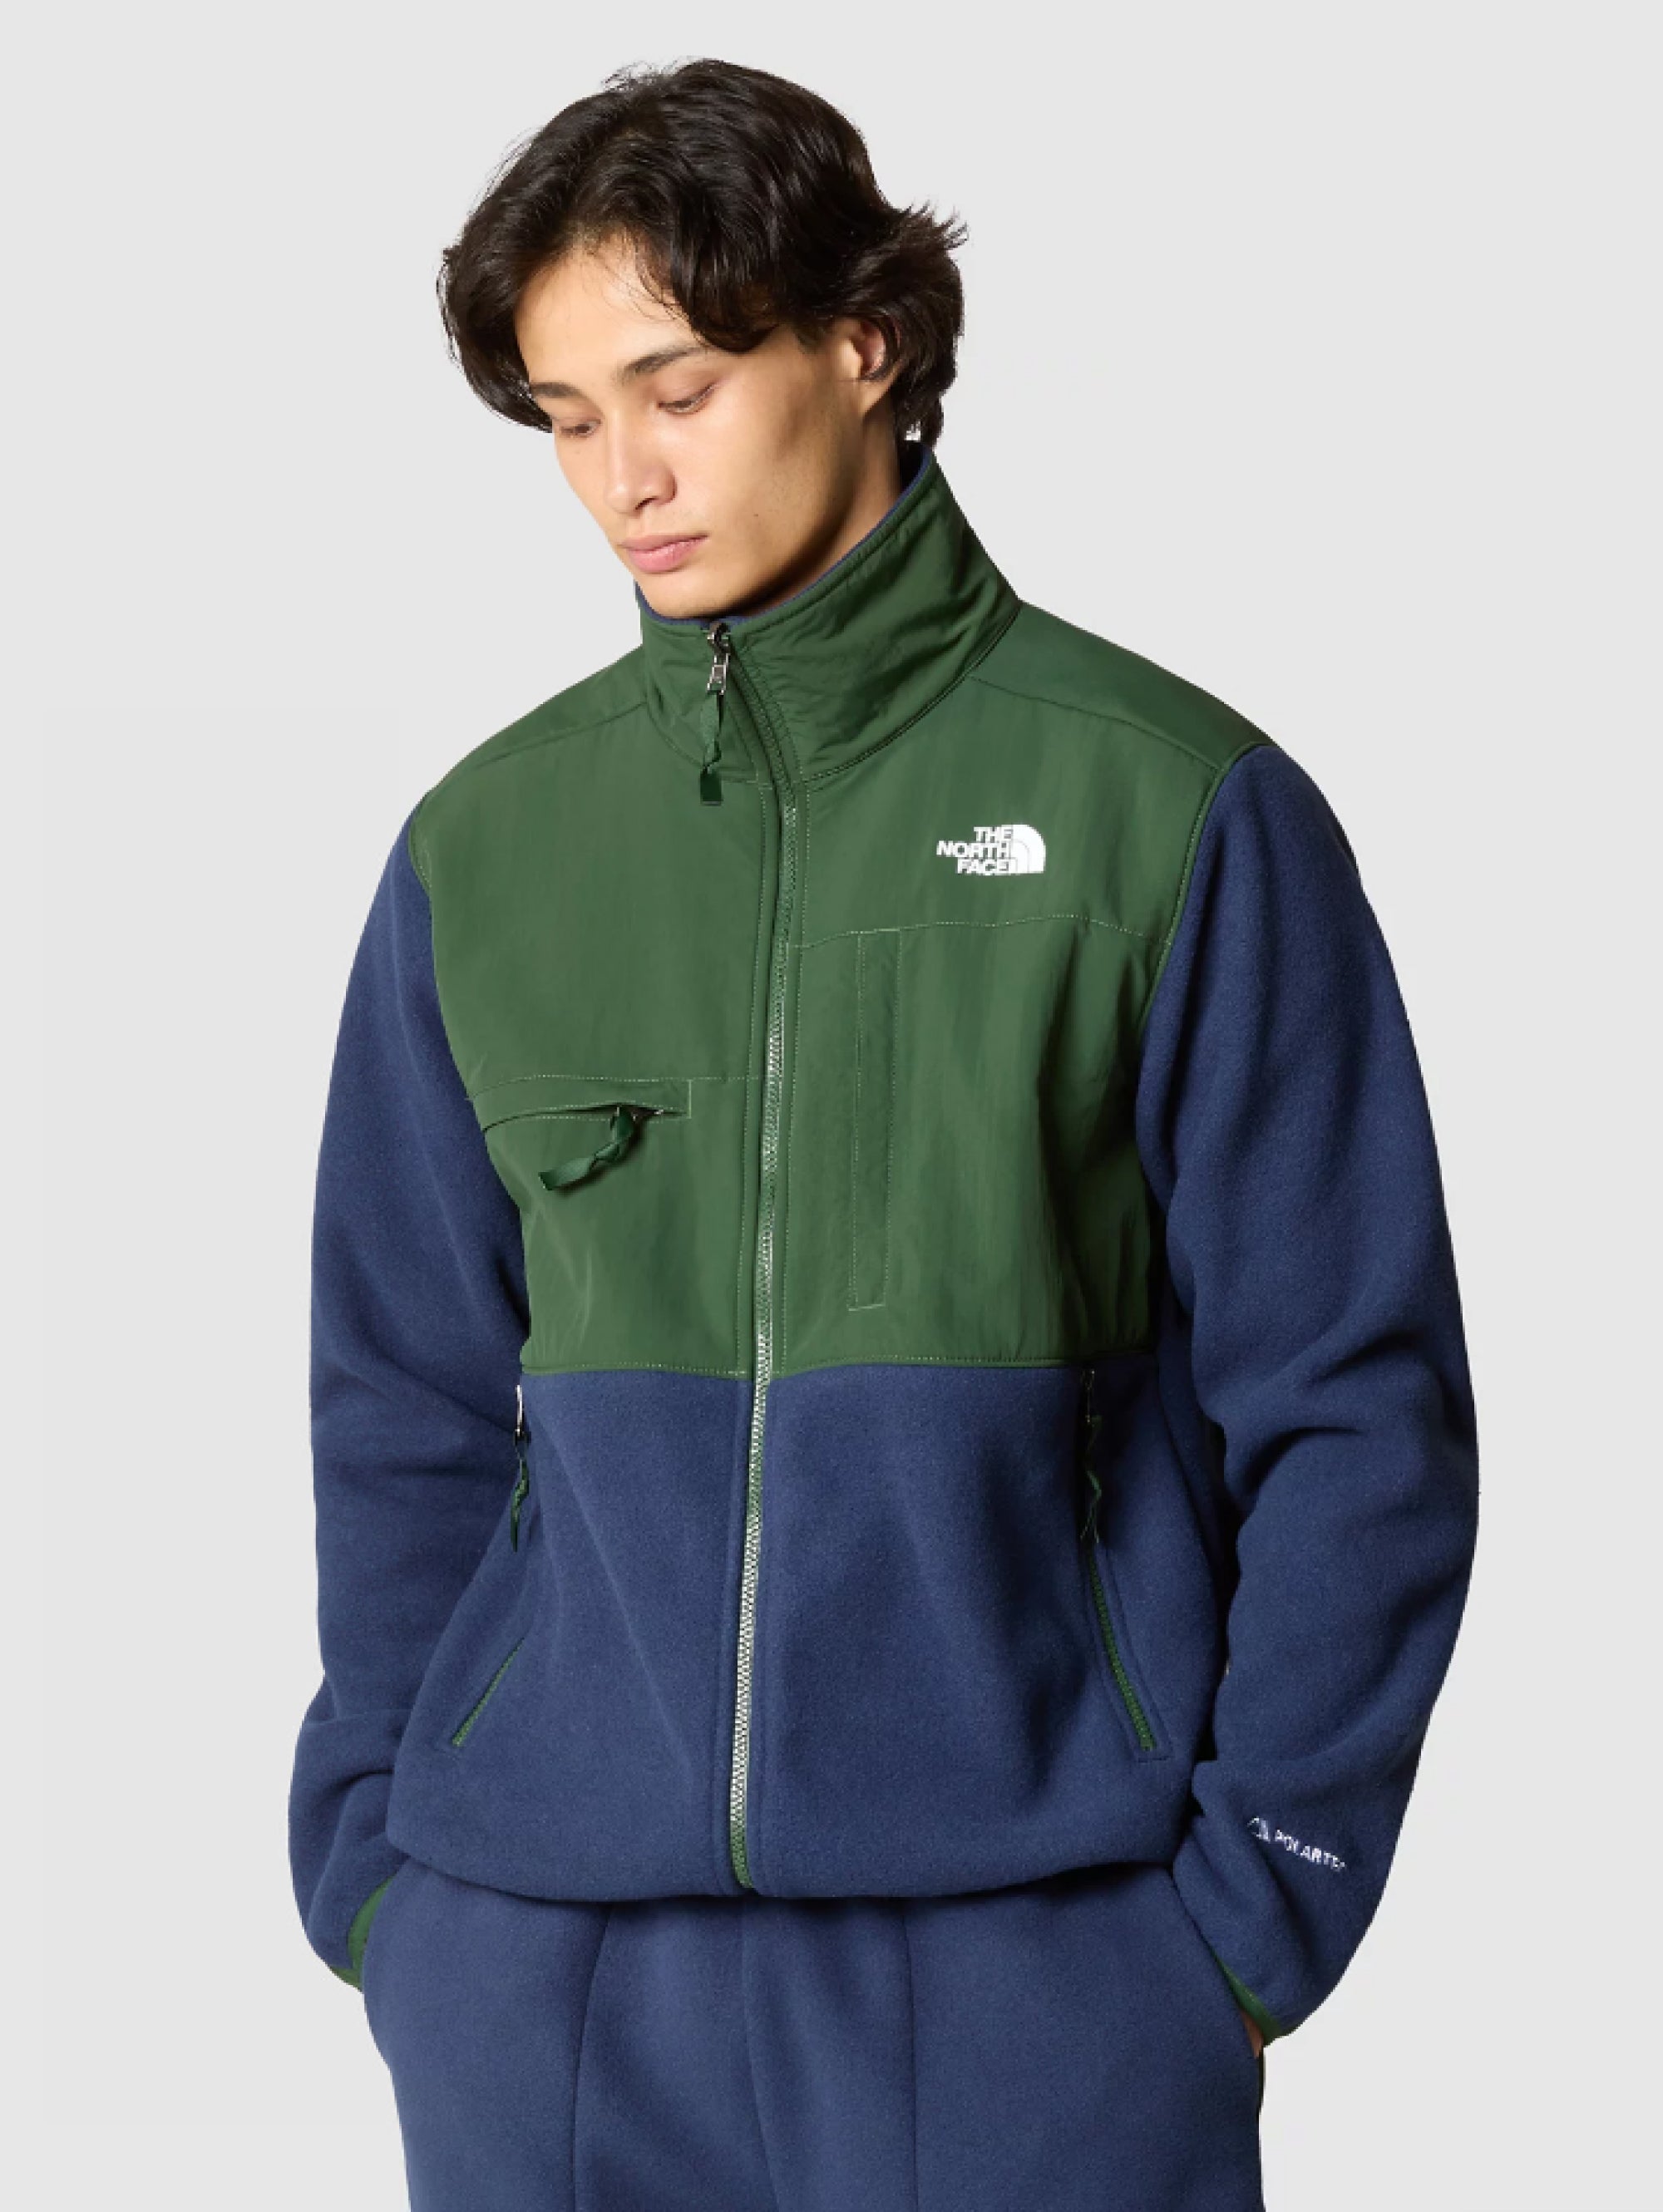 THE NORTH FACE - Green/Blue Recycled Polartec Fleece Denali Jacket – TRYME  Shop